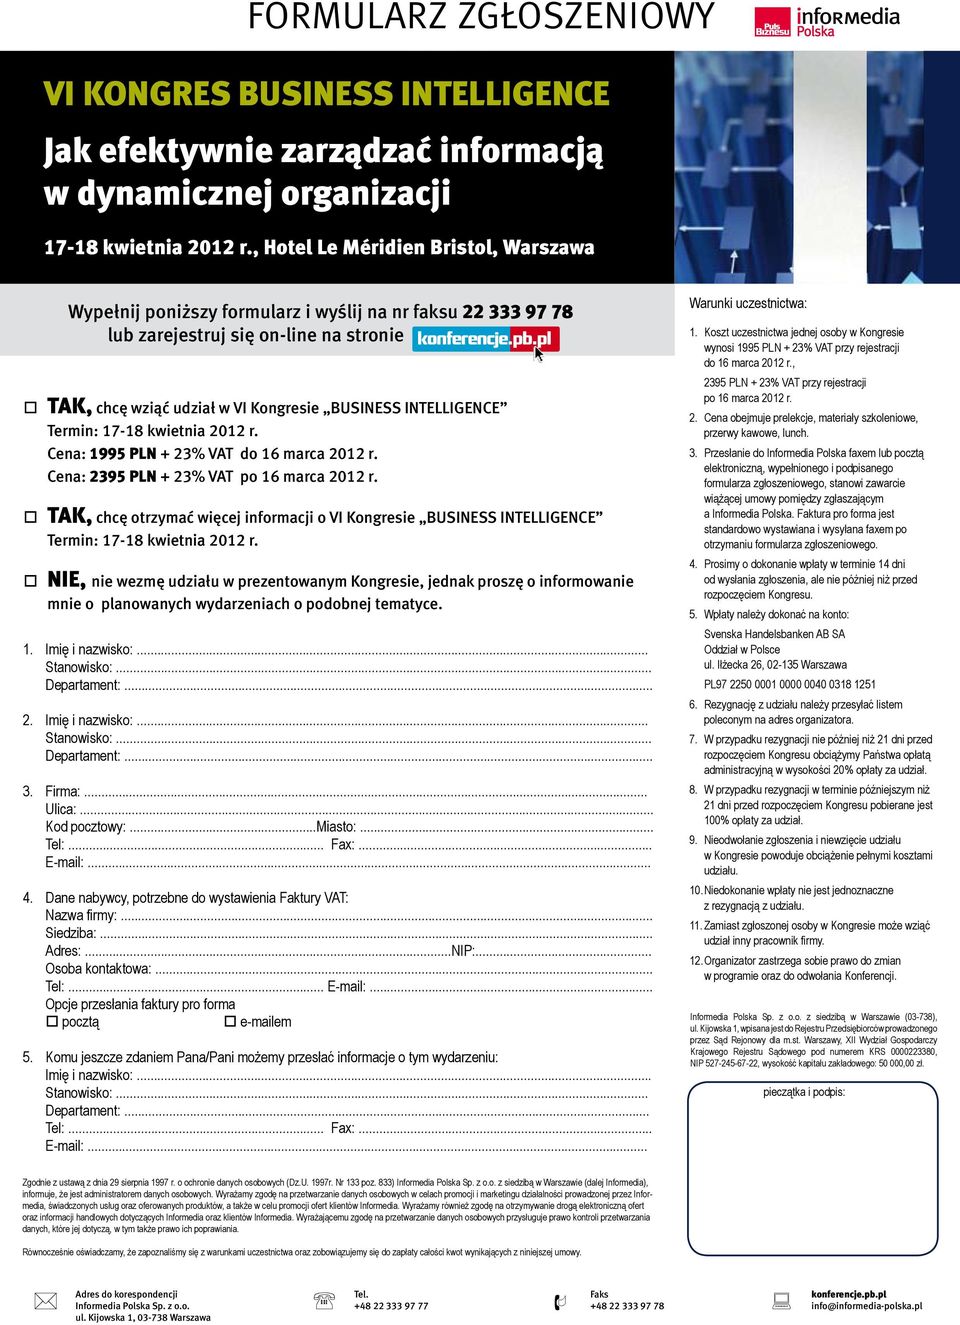 Cena: 2395 PLN + 23% VAT po 16 marca 2012 r. TAK, chcę otrzymać więcej informacji o VI Kongresie BUSINESS INTELLIGENCE Termin: 17-18 kwietnia 2012 r.